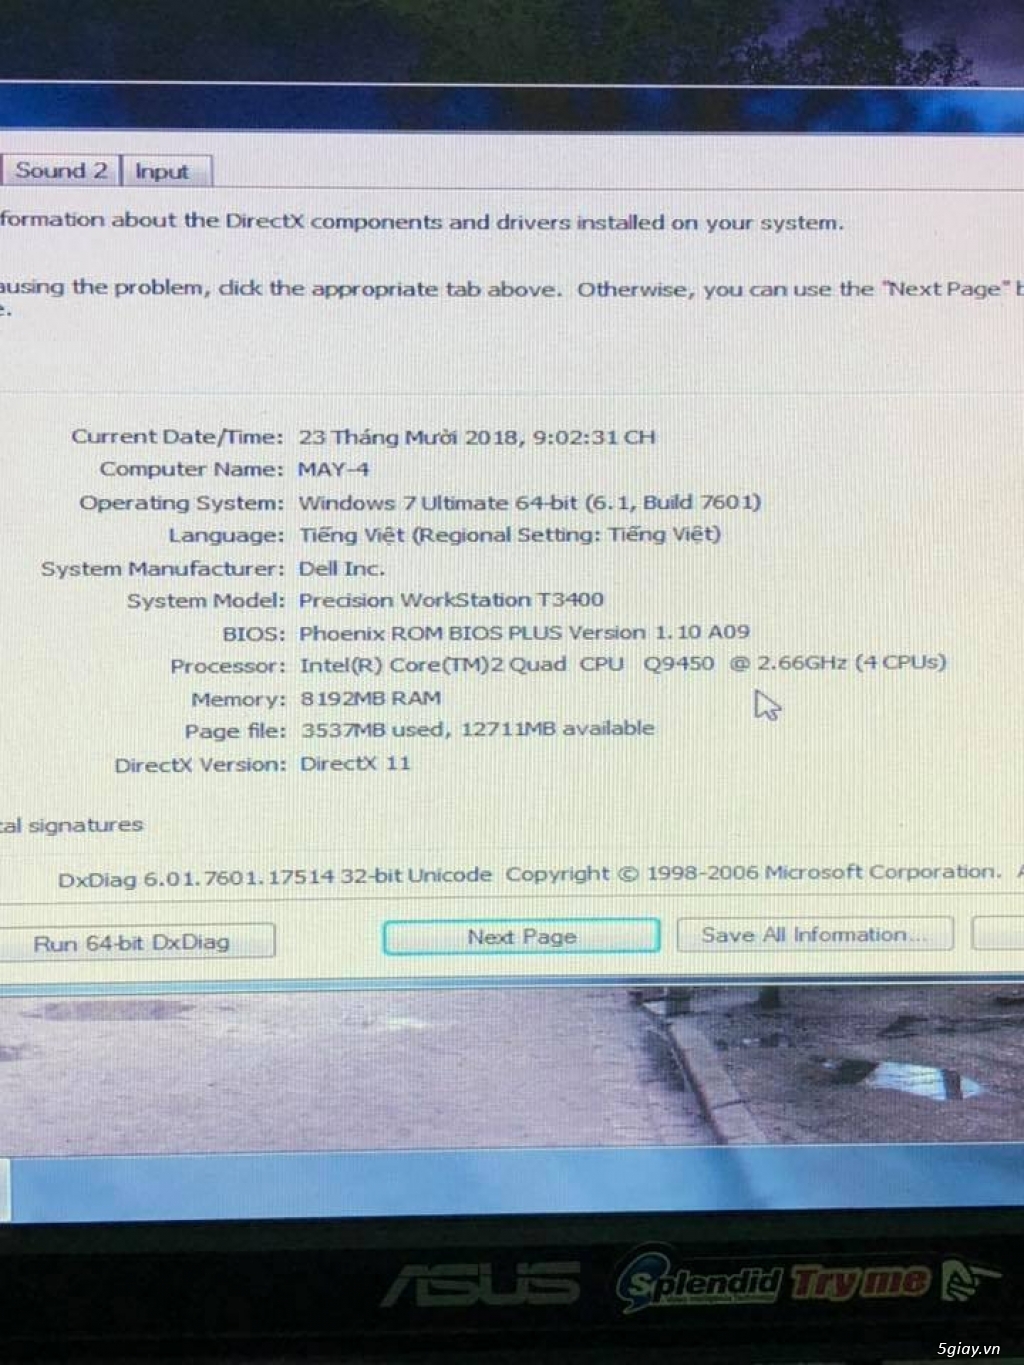 Thùng Dell workstation T3400 corequad Q9450 tâm huyết, RAM 8GB,320GB - 2